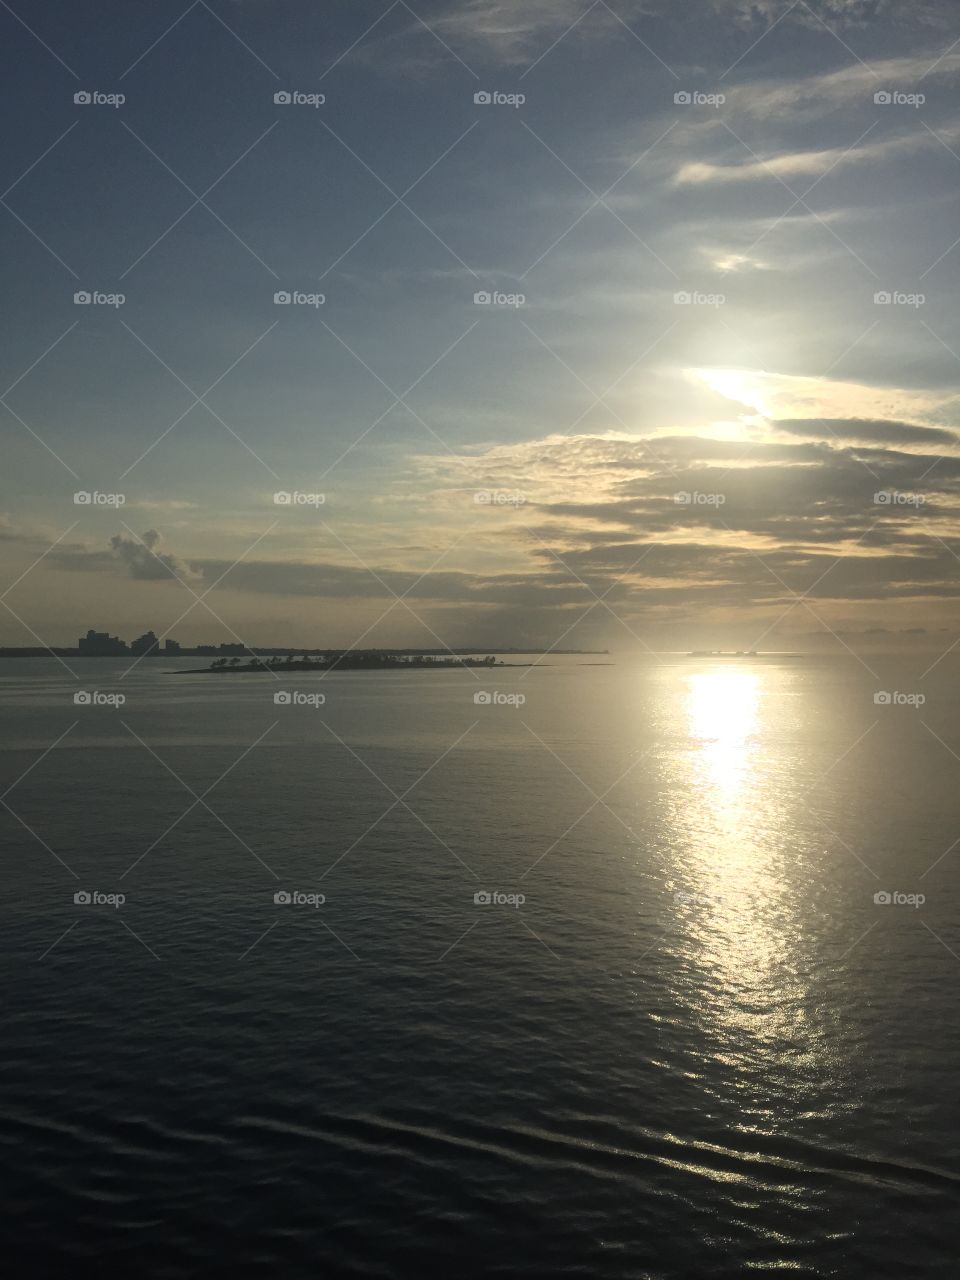 Bahamas sunset 